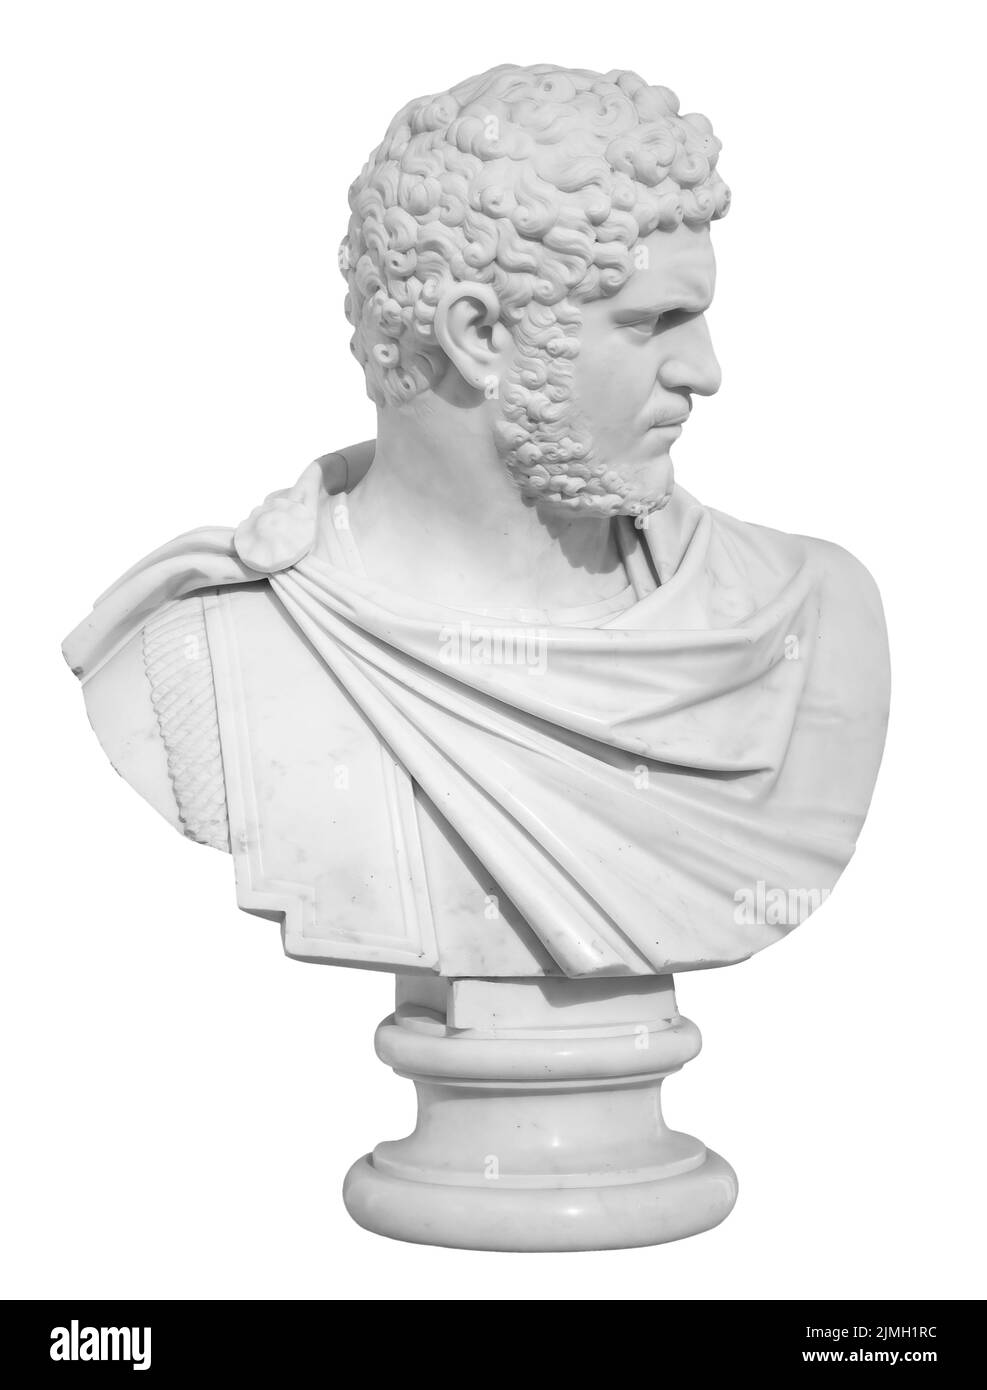 Ancient white marble sculpture bust of Caracalla. Marcus Aurelius Severus Antoninus Augustus known as Antoninus. Roman emperor. Stock Photo